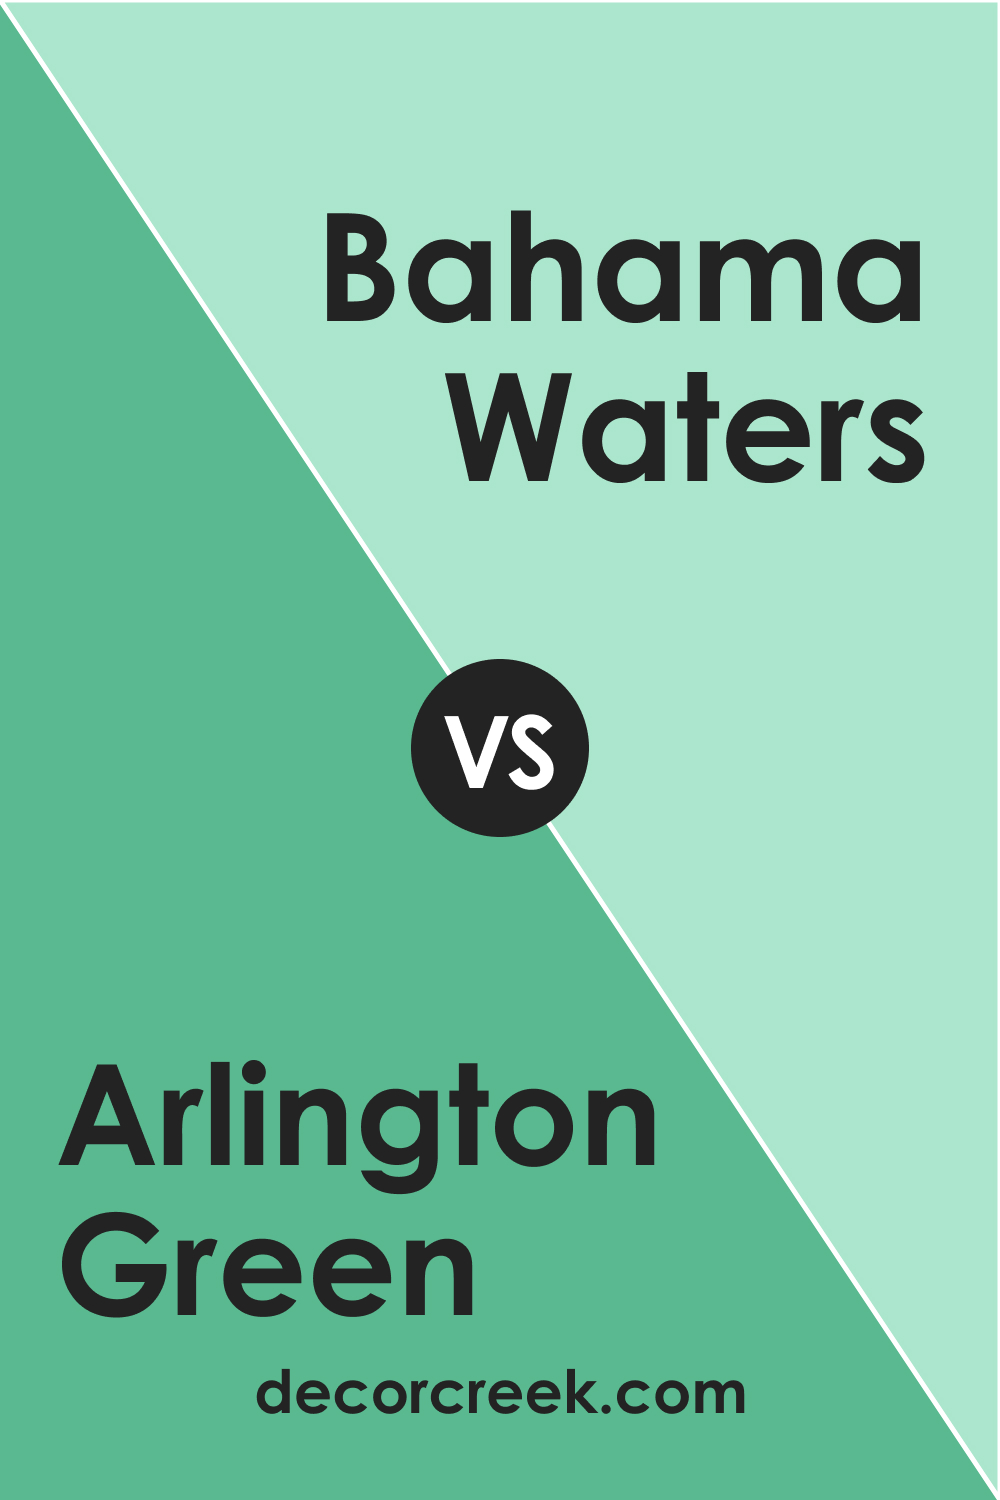 Arlington Green 580 vs. BM 576 Bahama Waters